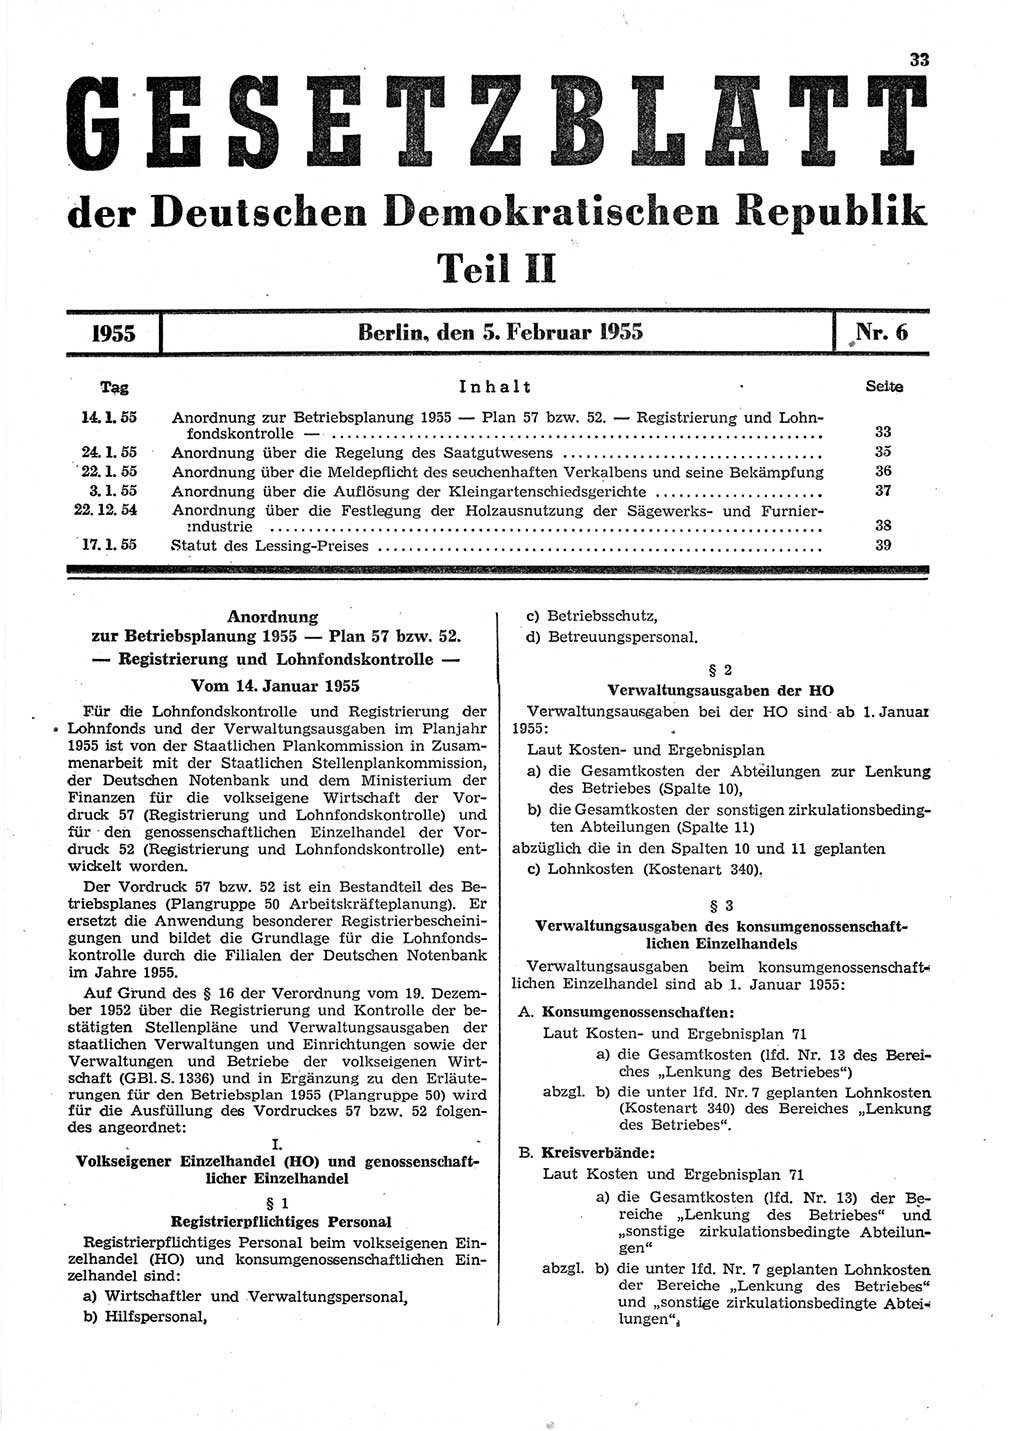 Gesetzblatt (GBl.) der Deutschen Demokratischen Republik (DDR) Teil ⅠⅠ 1955, Seite 33 (GBl. DDR ⅠⅠ 1955, S. 33)